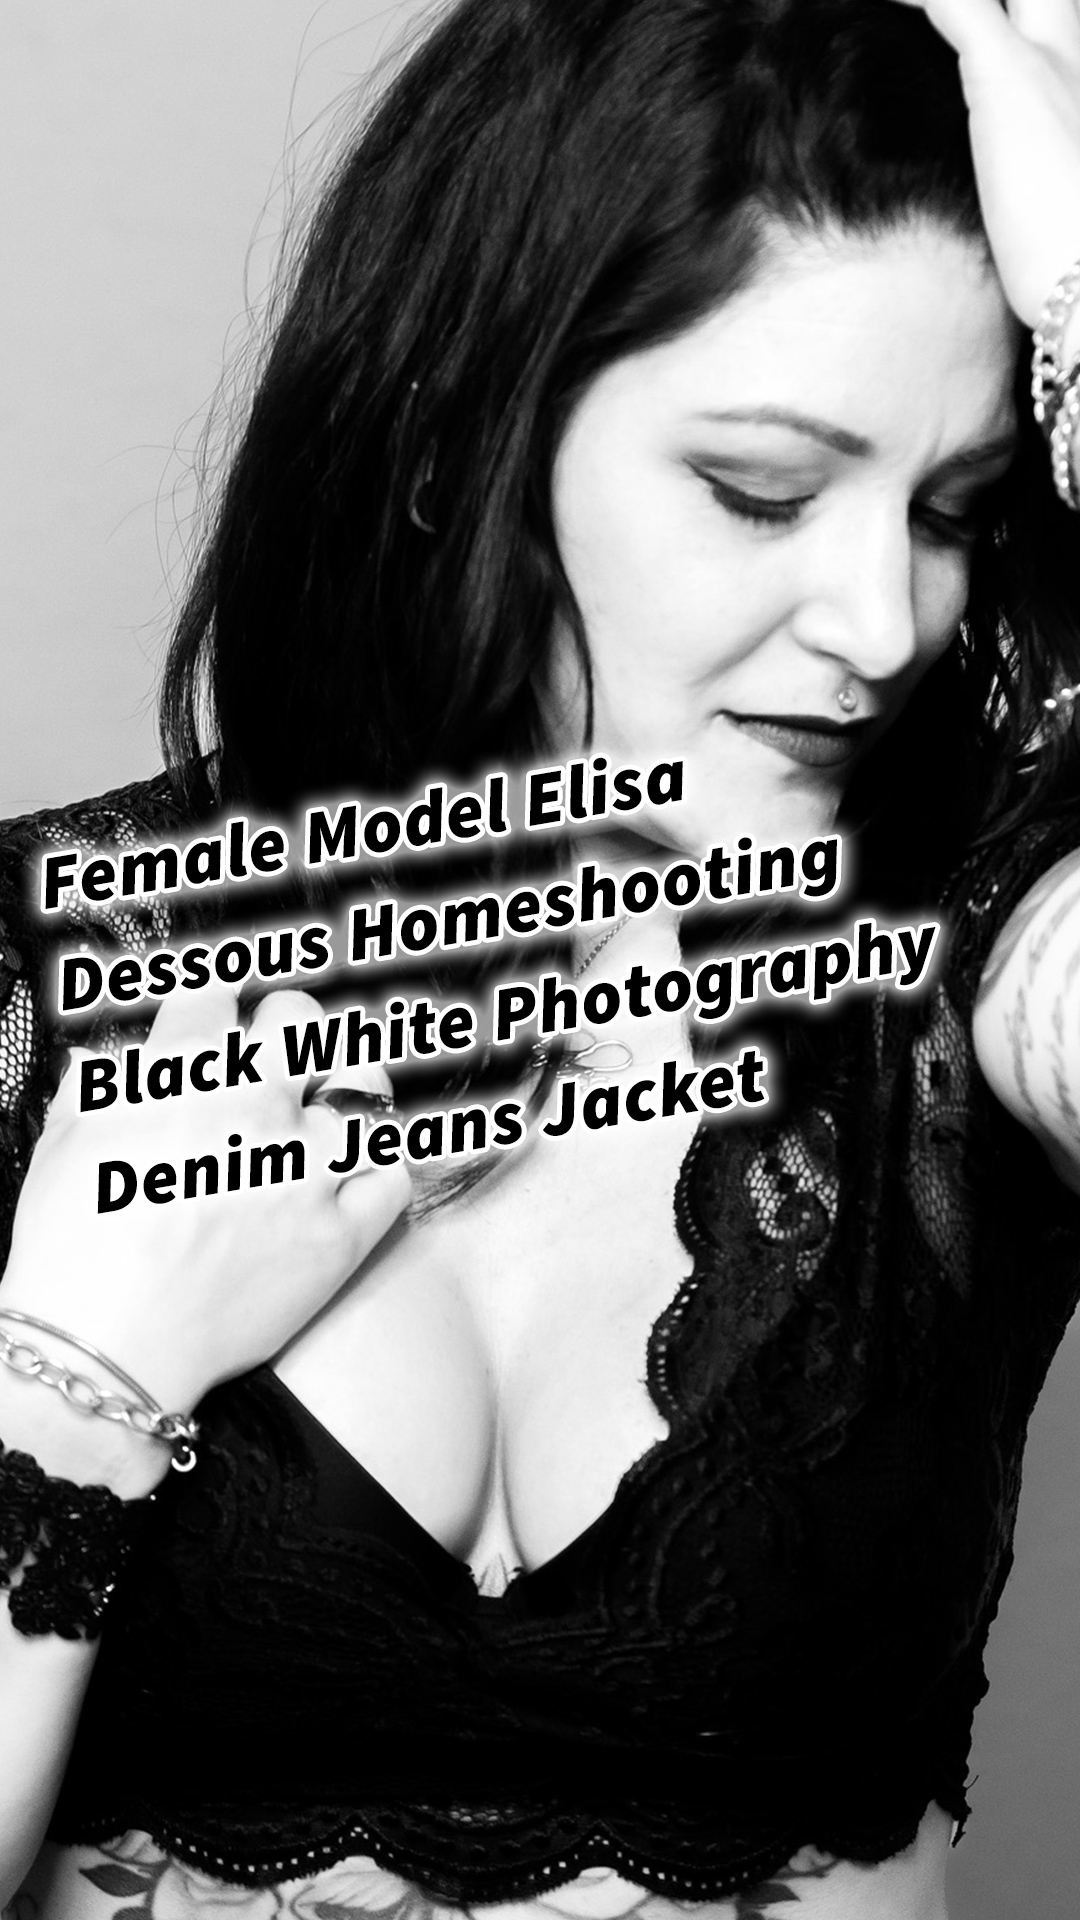 Female Model Elisa Dessous Tattoo Homeshooting Black White Photography Denim Jeans Jacket Ein ausdrucksstarkes Homeshooting Schwarz-Weiß-Fotografie und Denim-Jeansjacke